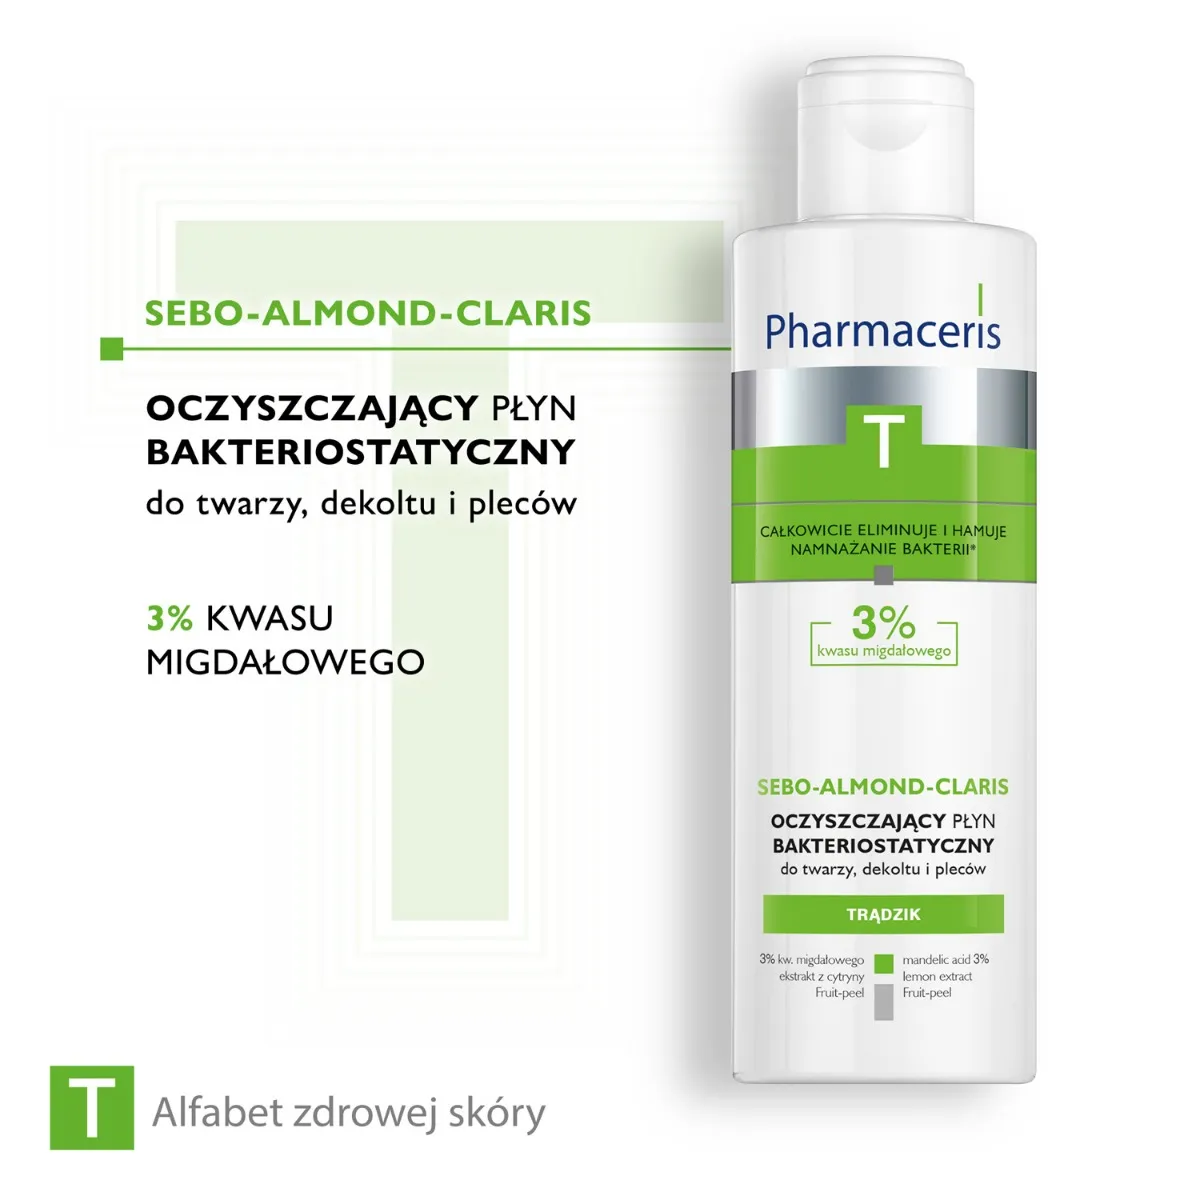 Pharmaceris T Sebo-Almond-Claris, oczyszczający płyn bakteriostatyczny, 190 ml 